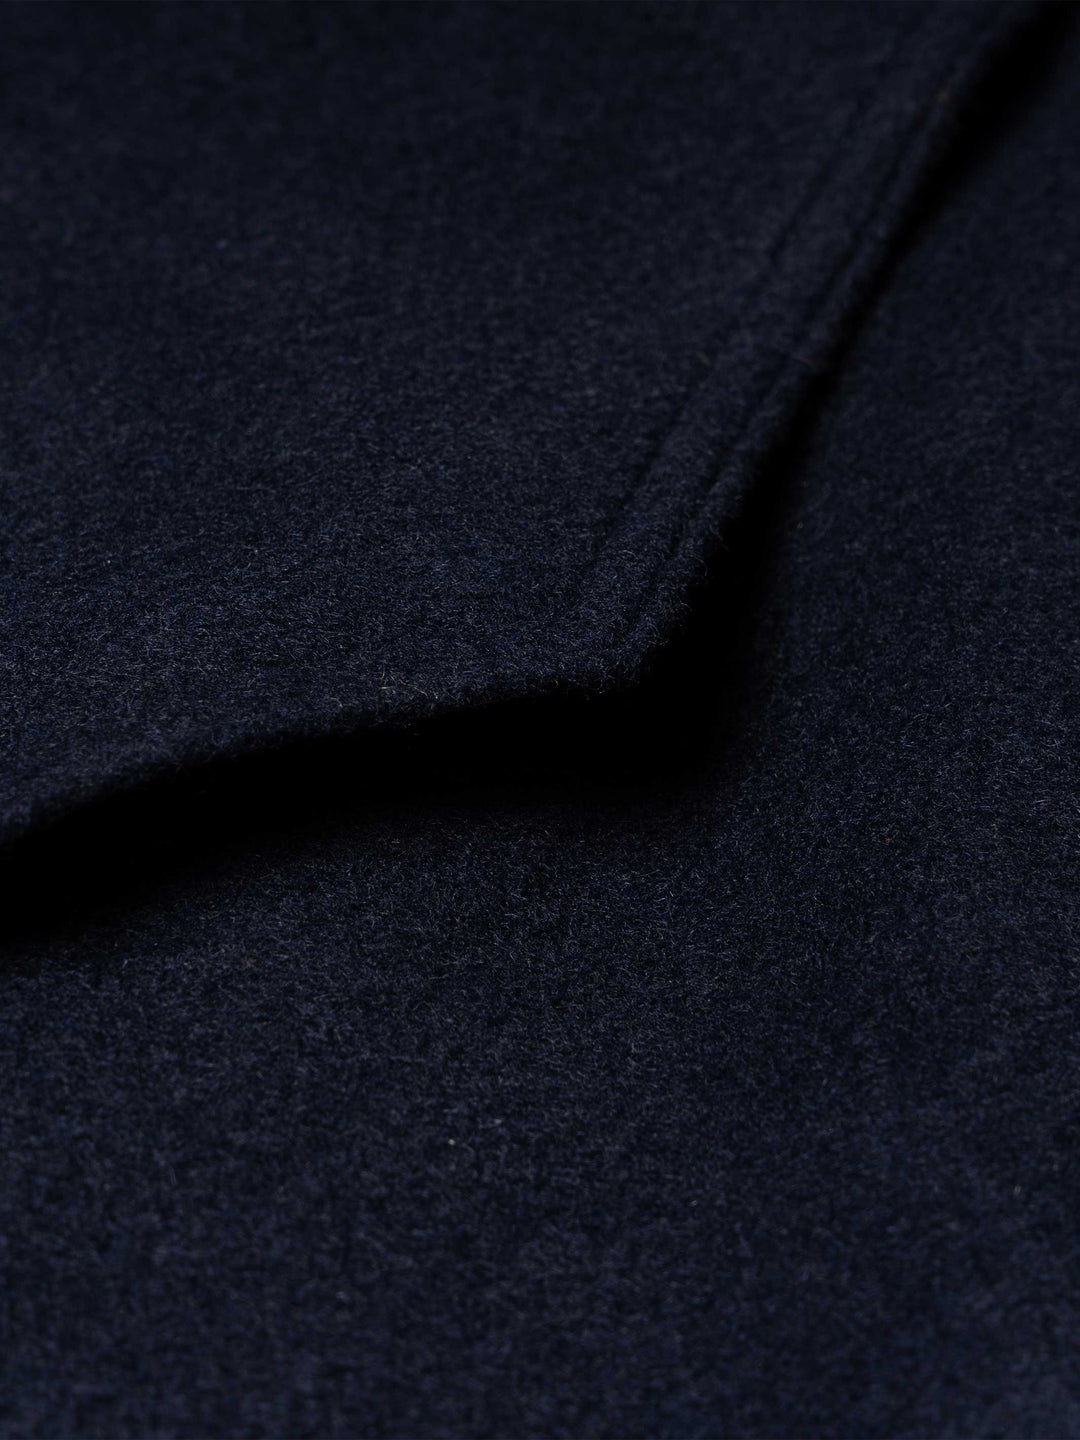 Wool Overshirt - Schaefer Outfitter